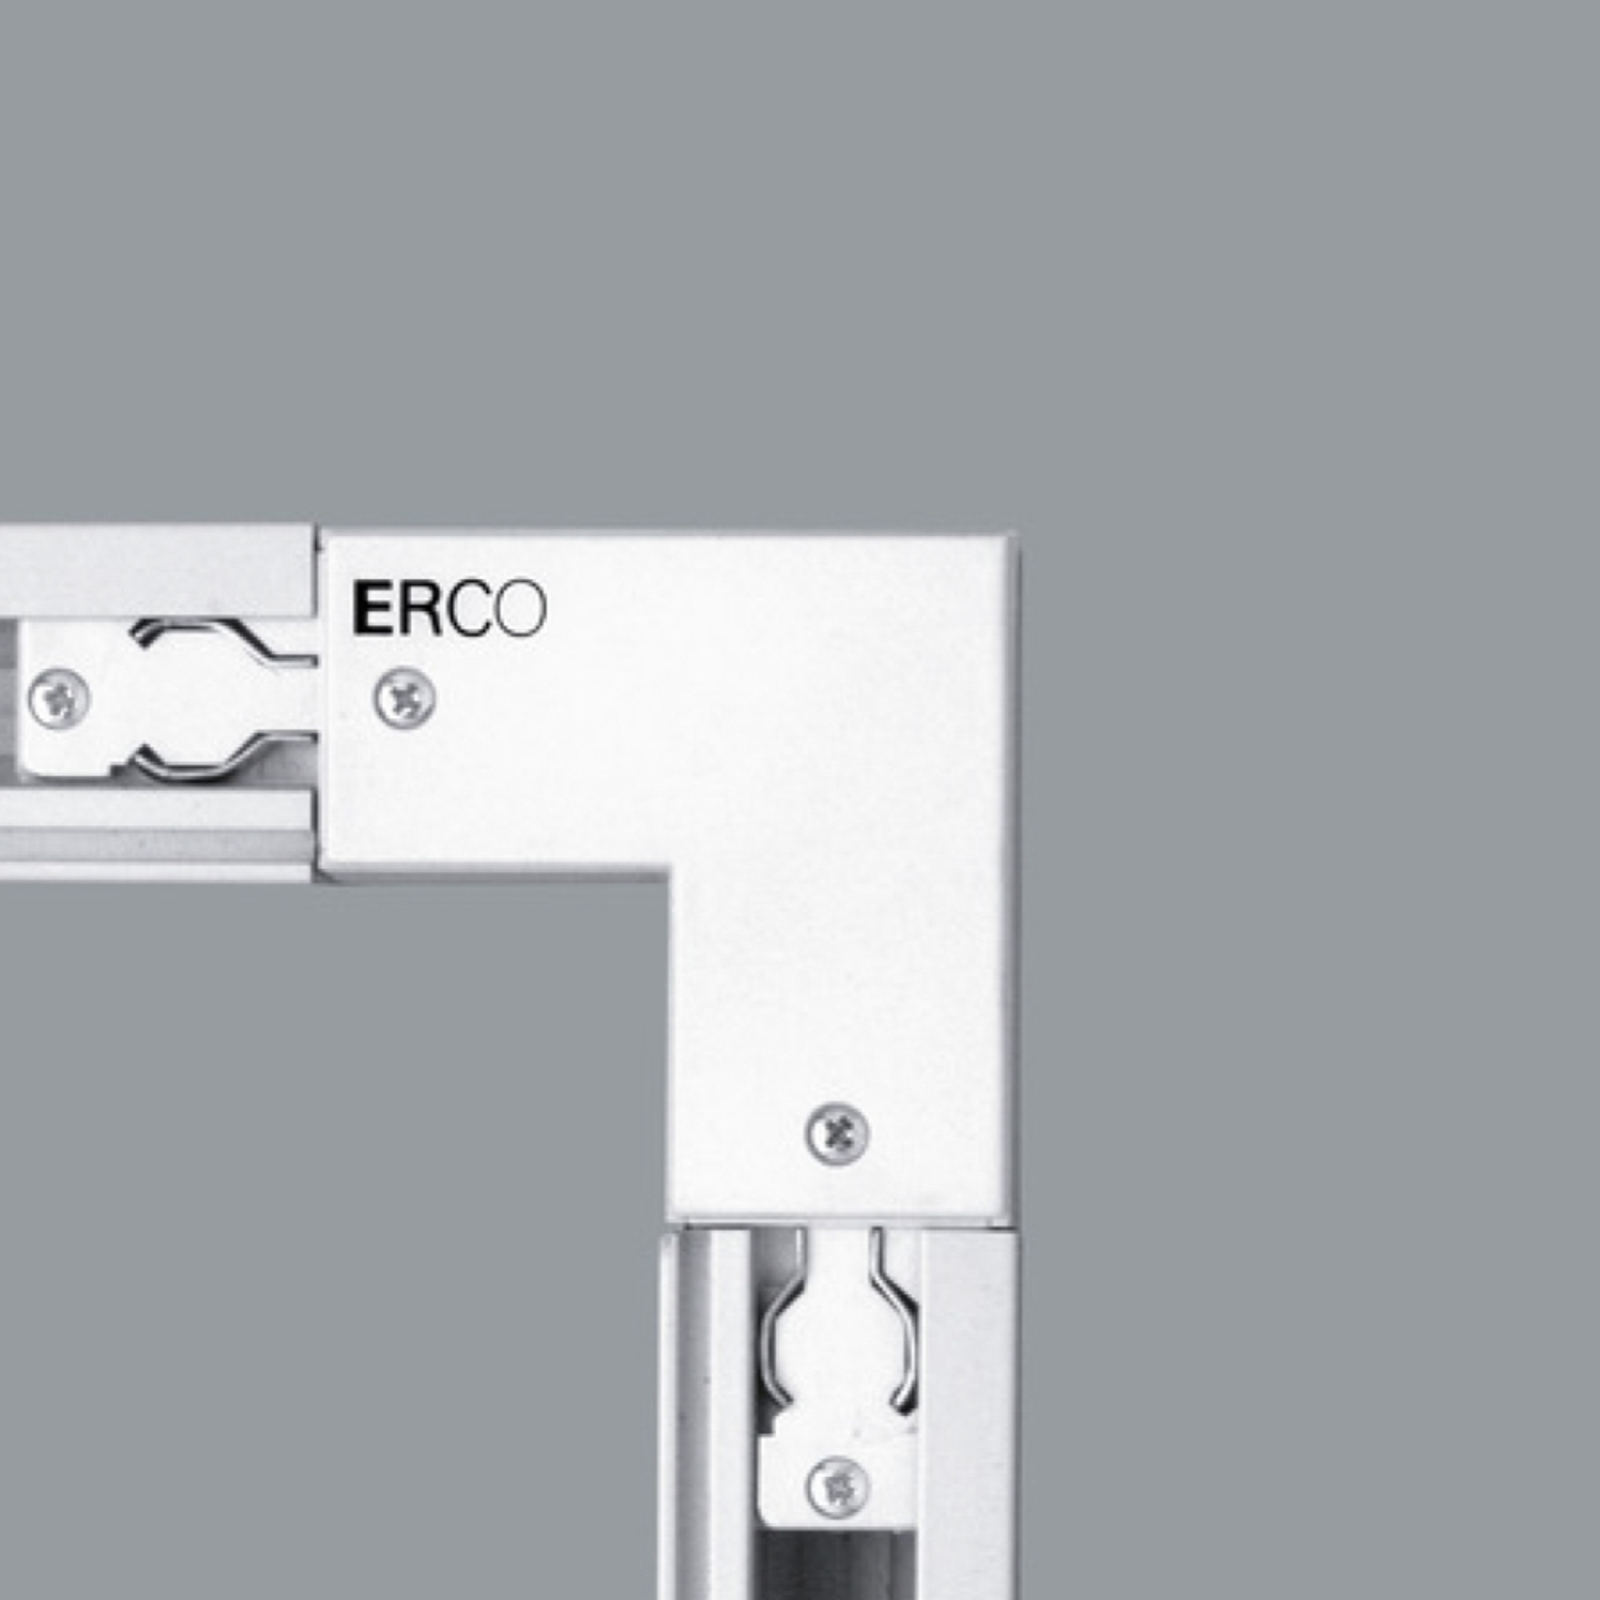 ERCO 3 fázisú sarokcsatlakozó védő l. belül, fehér